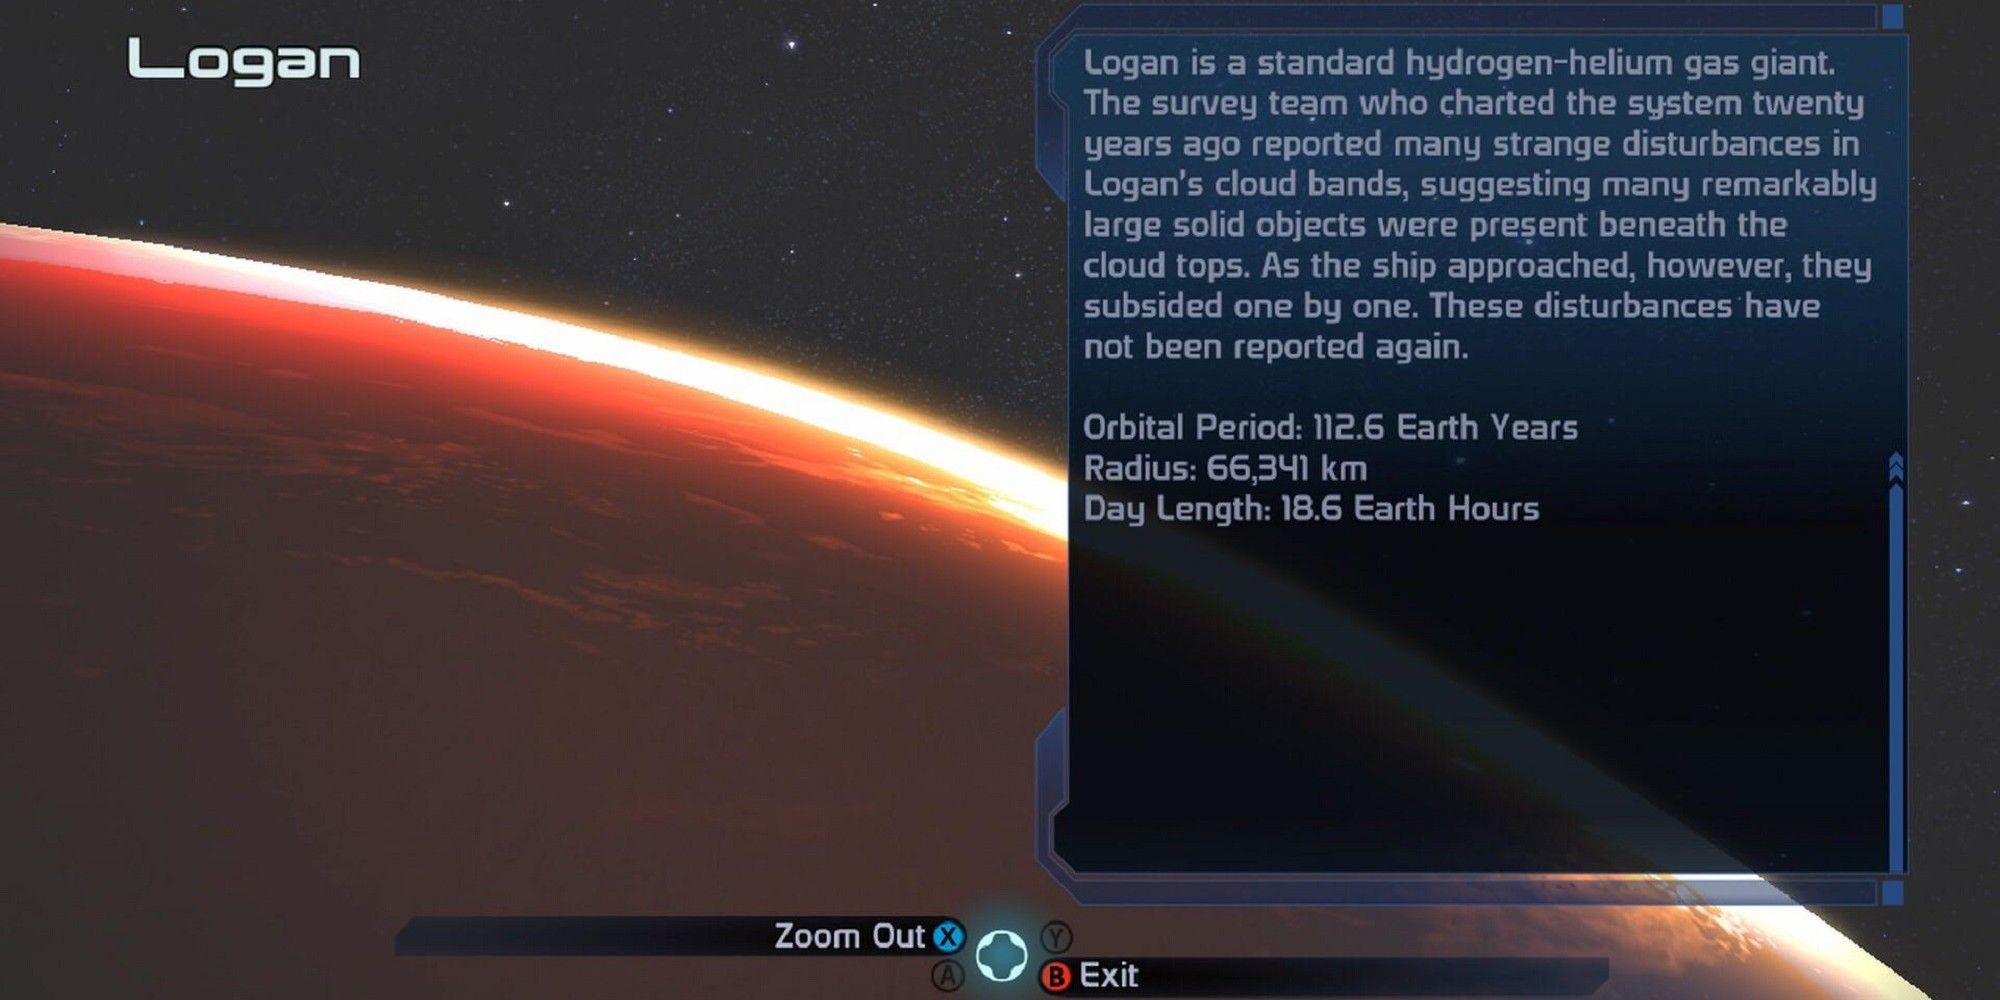 Description Of The Planet Logan